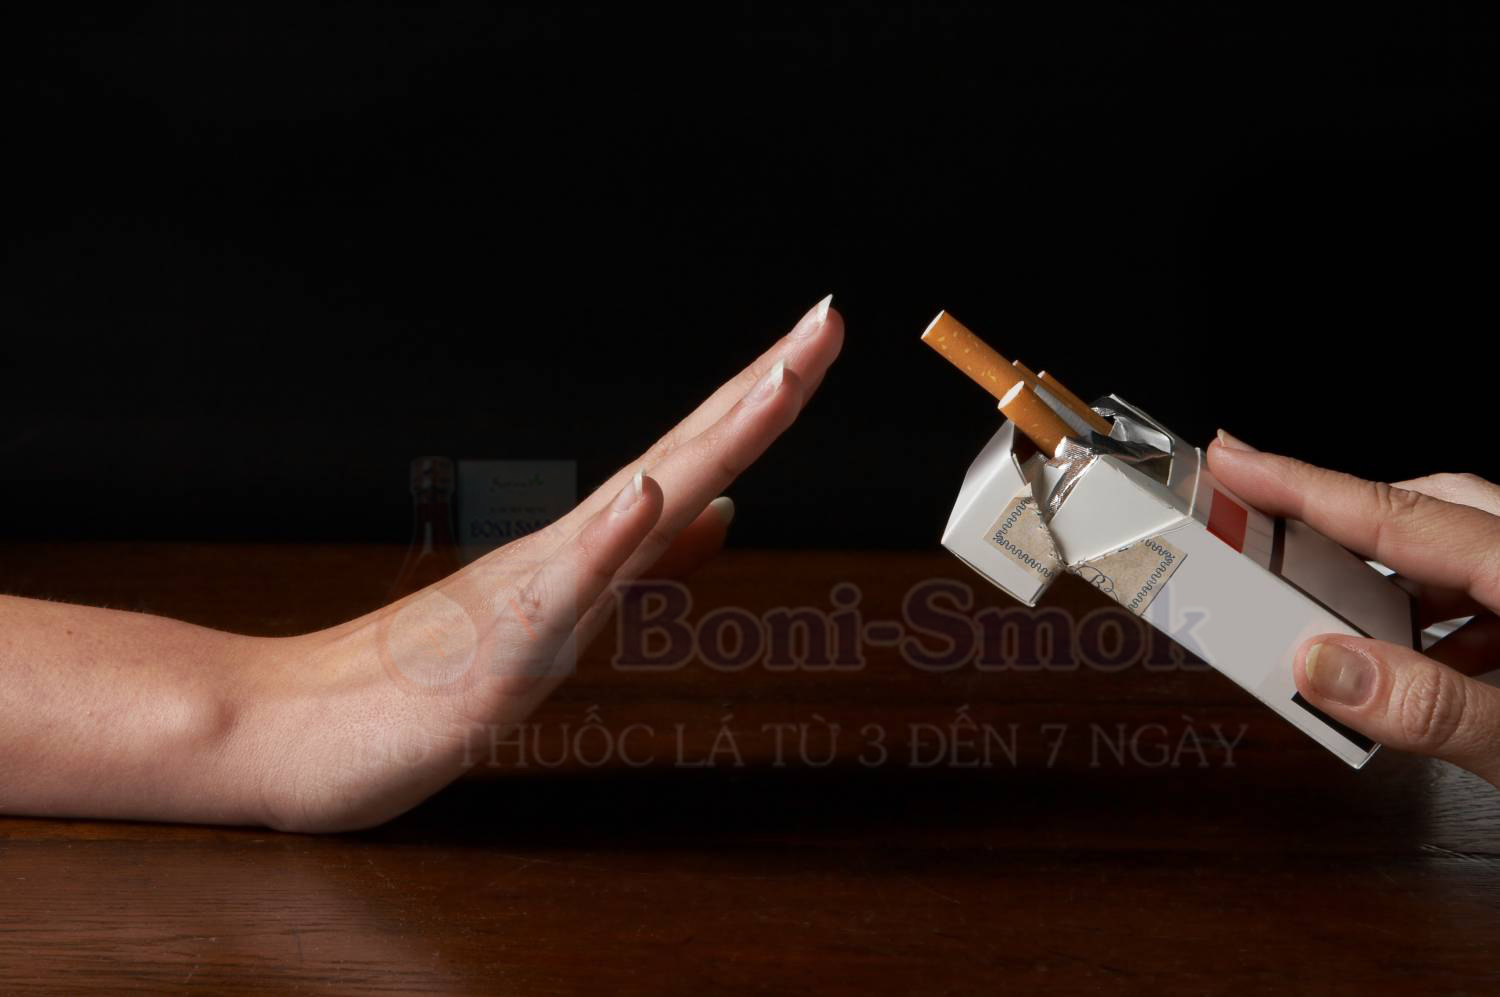 Có Boni-Smok - thuốc lá không thể hủy hoại cuộc đời bạn được